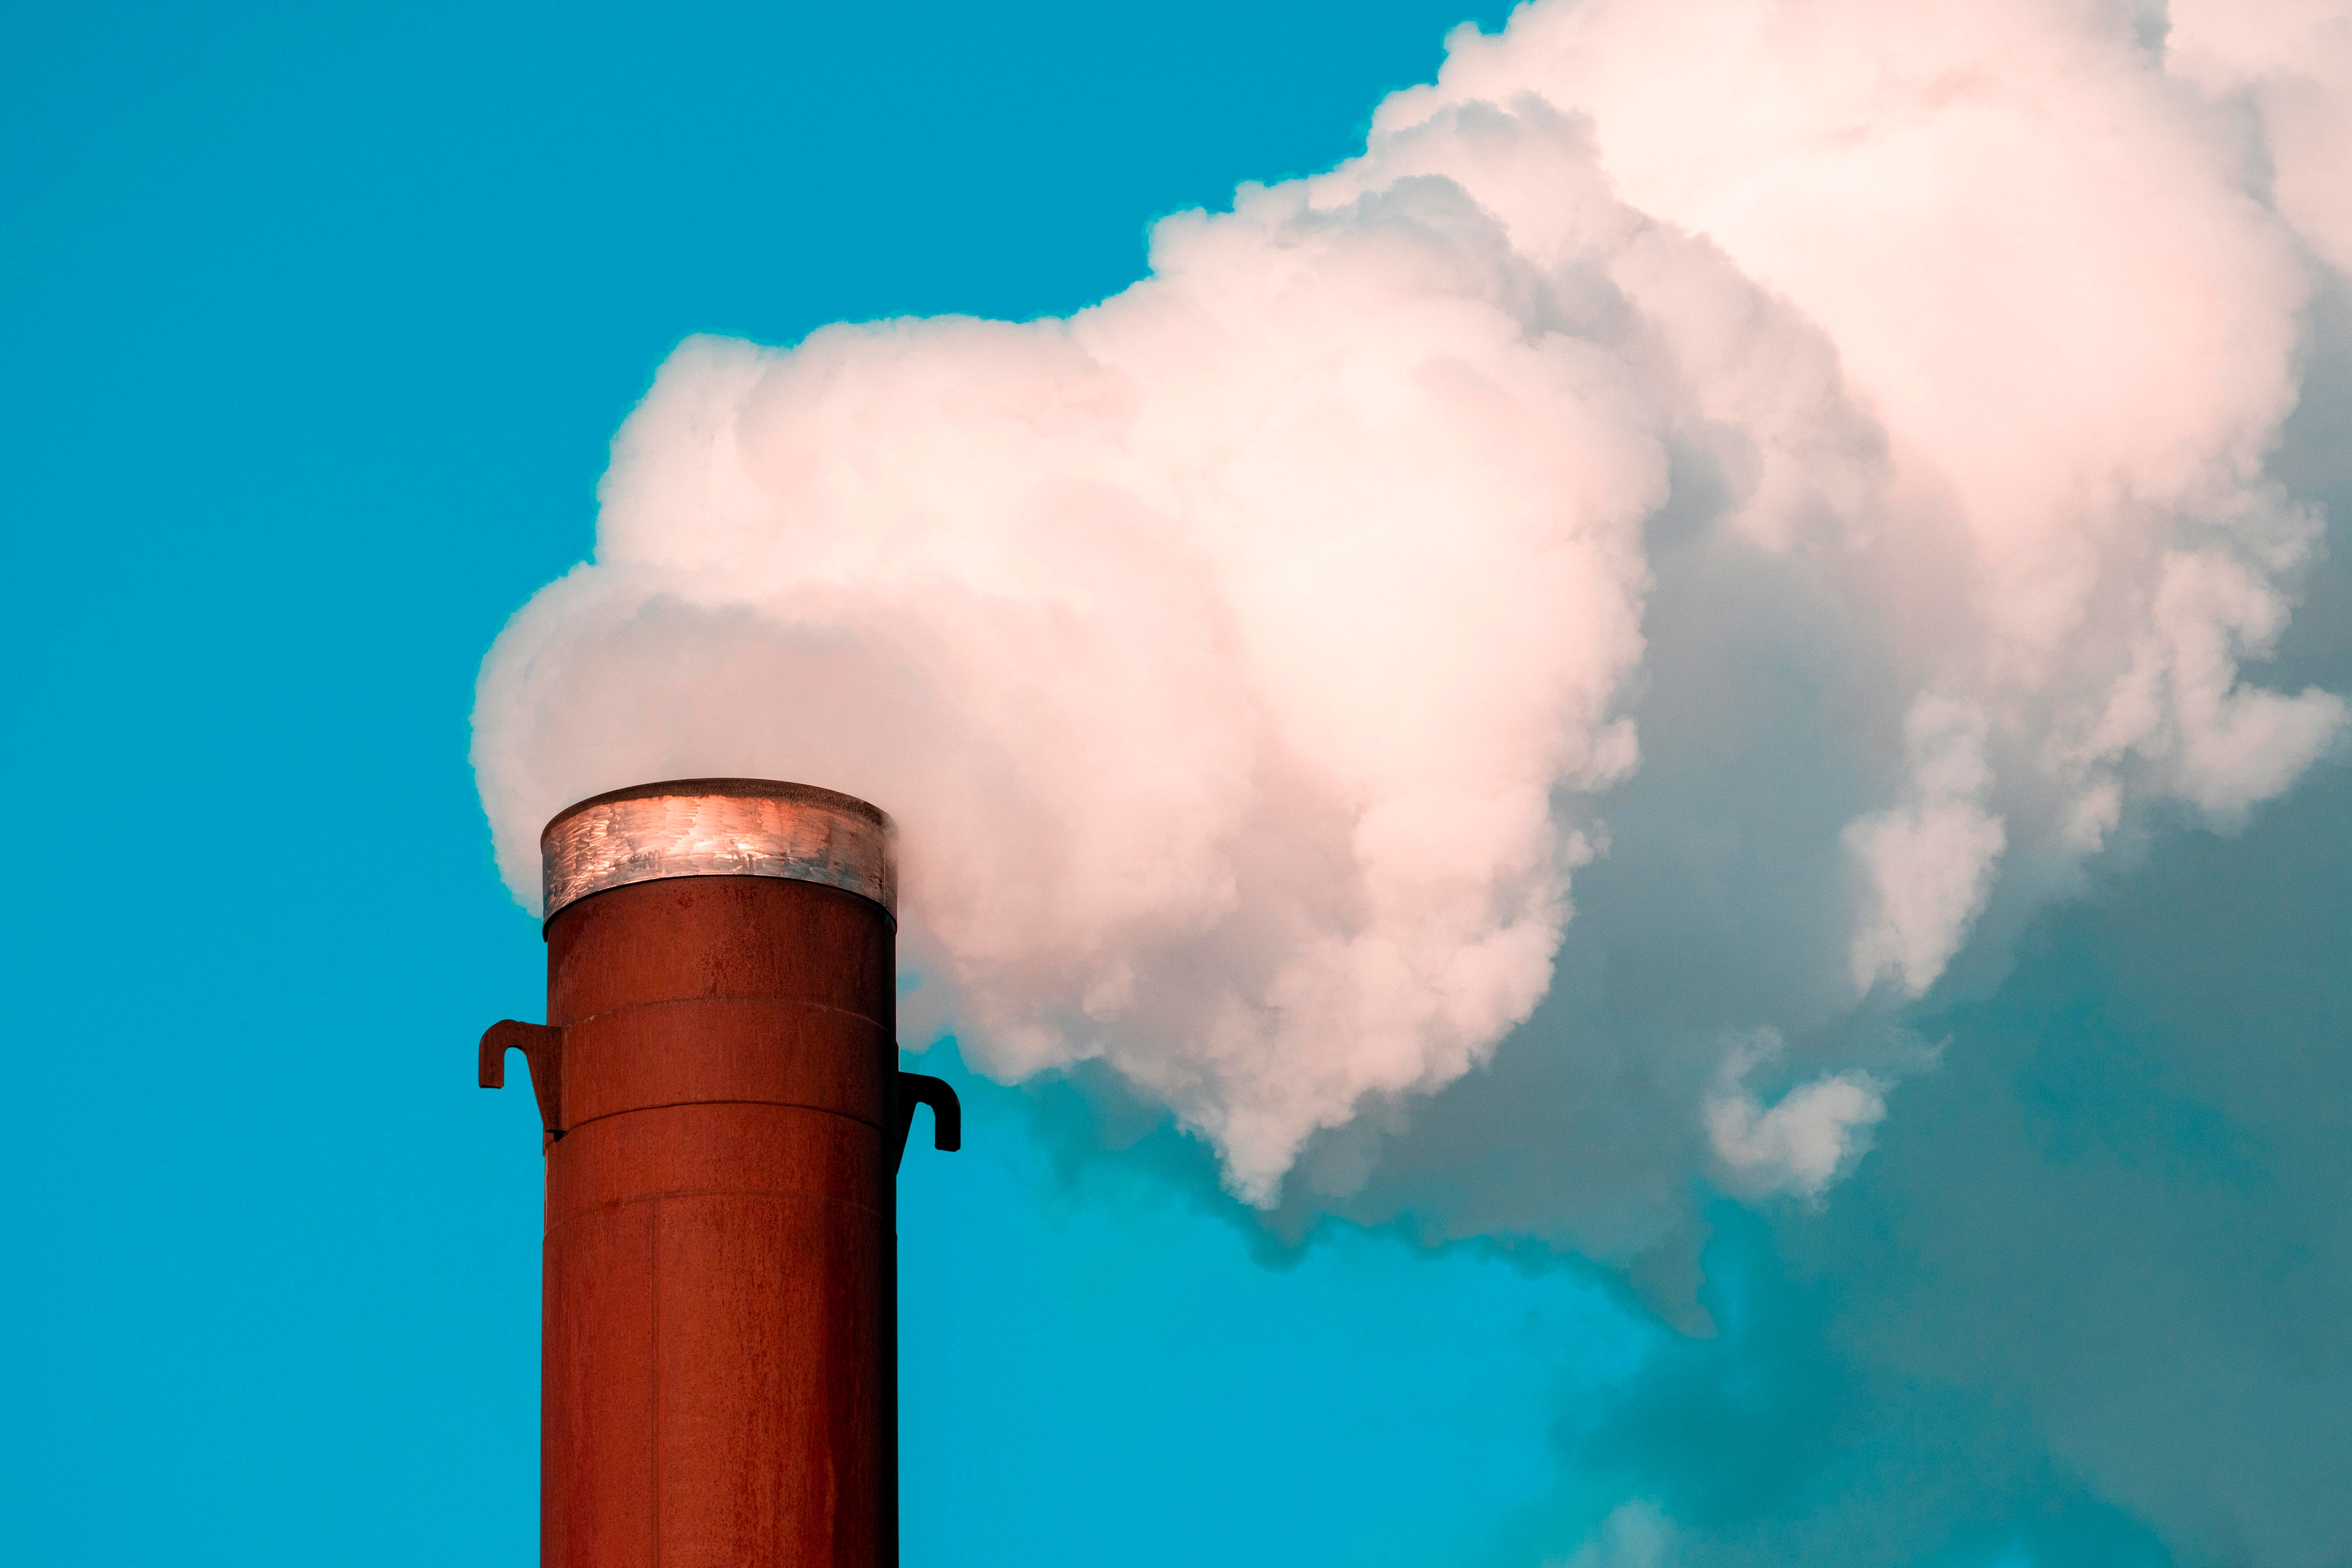 CO2-Düngung - Warum sie wichtig ist und wie es geht